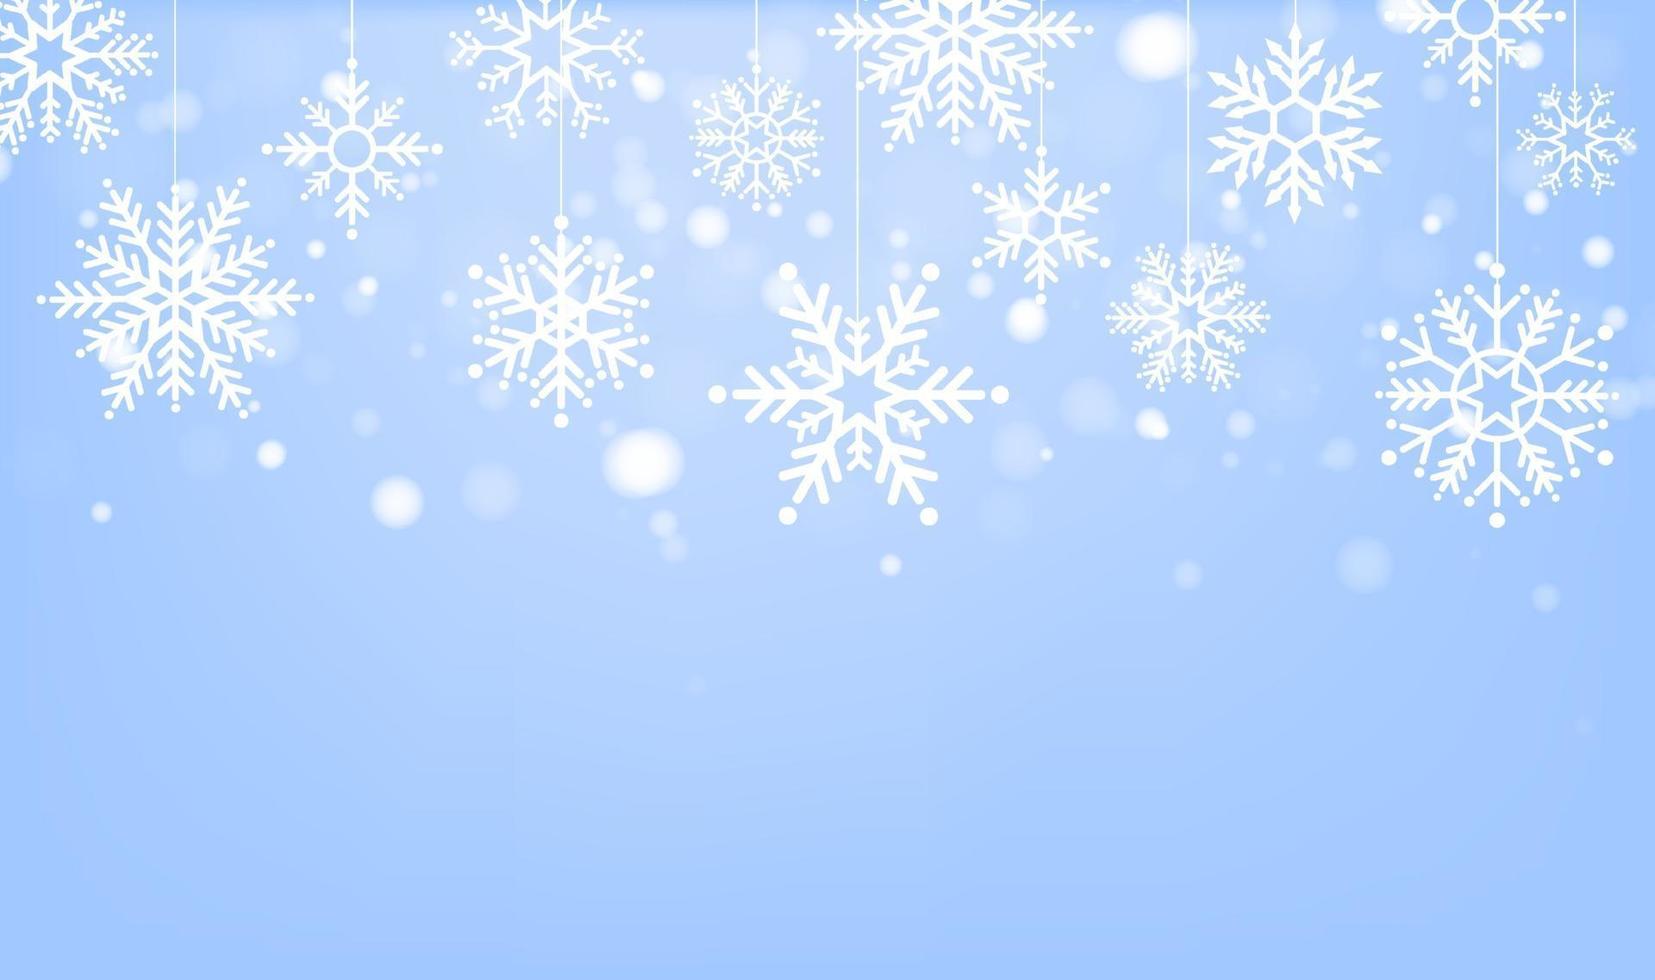 Frohe Weihnachten und ein frohes neues Jahr Hintergrund mit Weihnachtsbaum aus Schneeflocken. Vektorillustration vektor